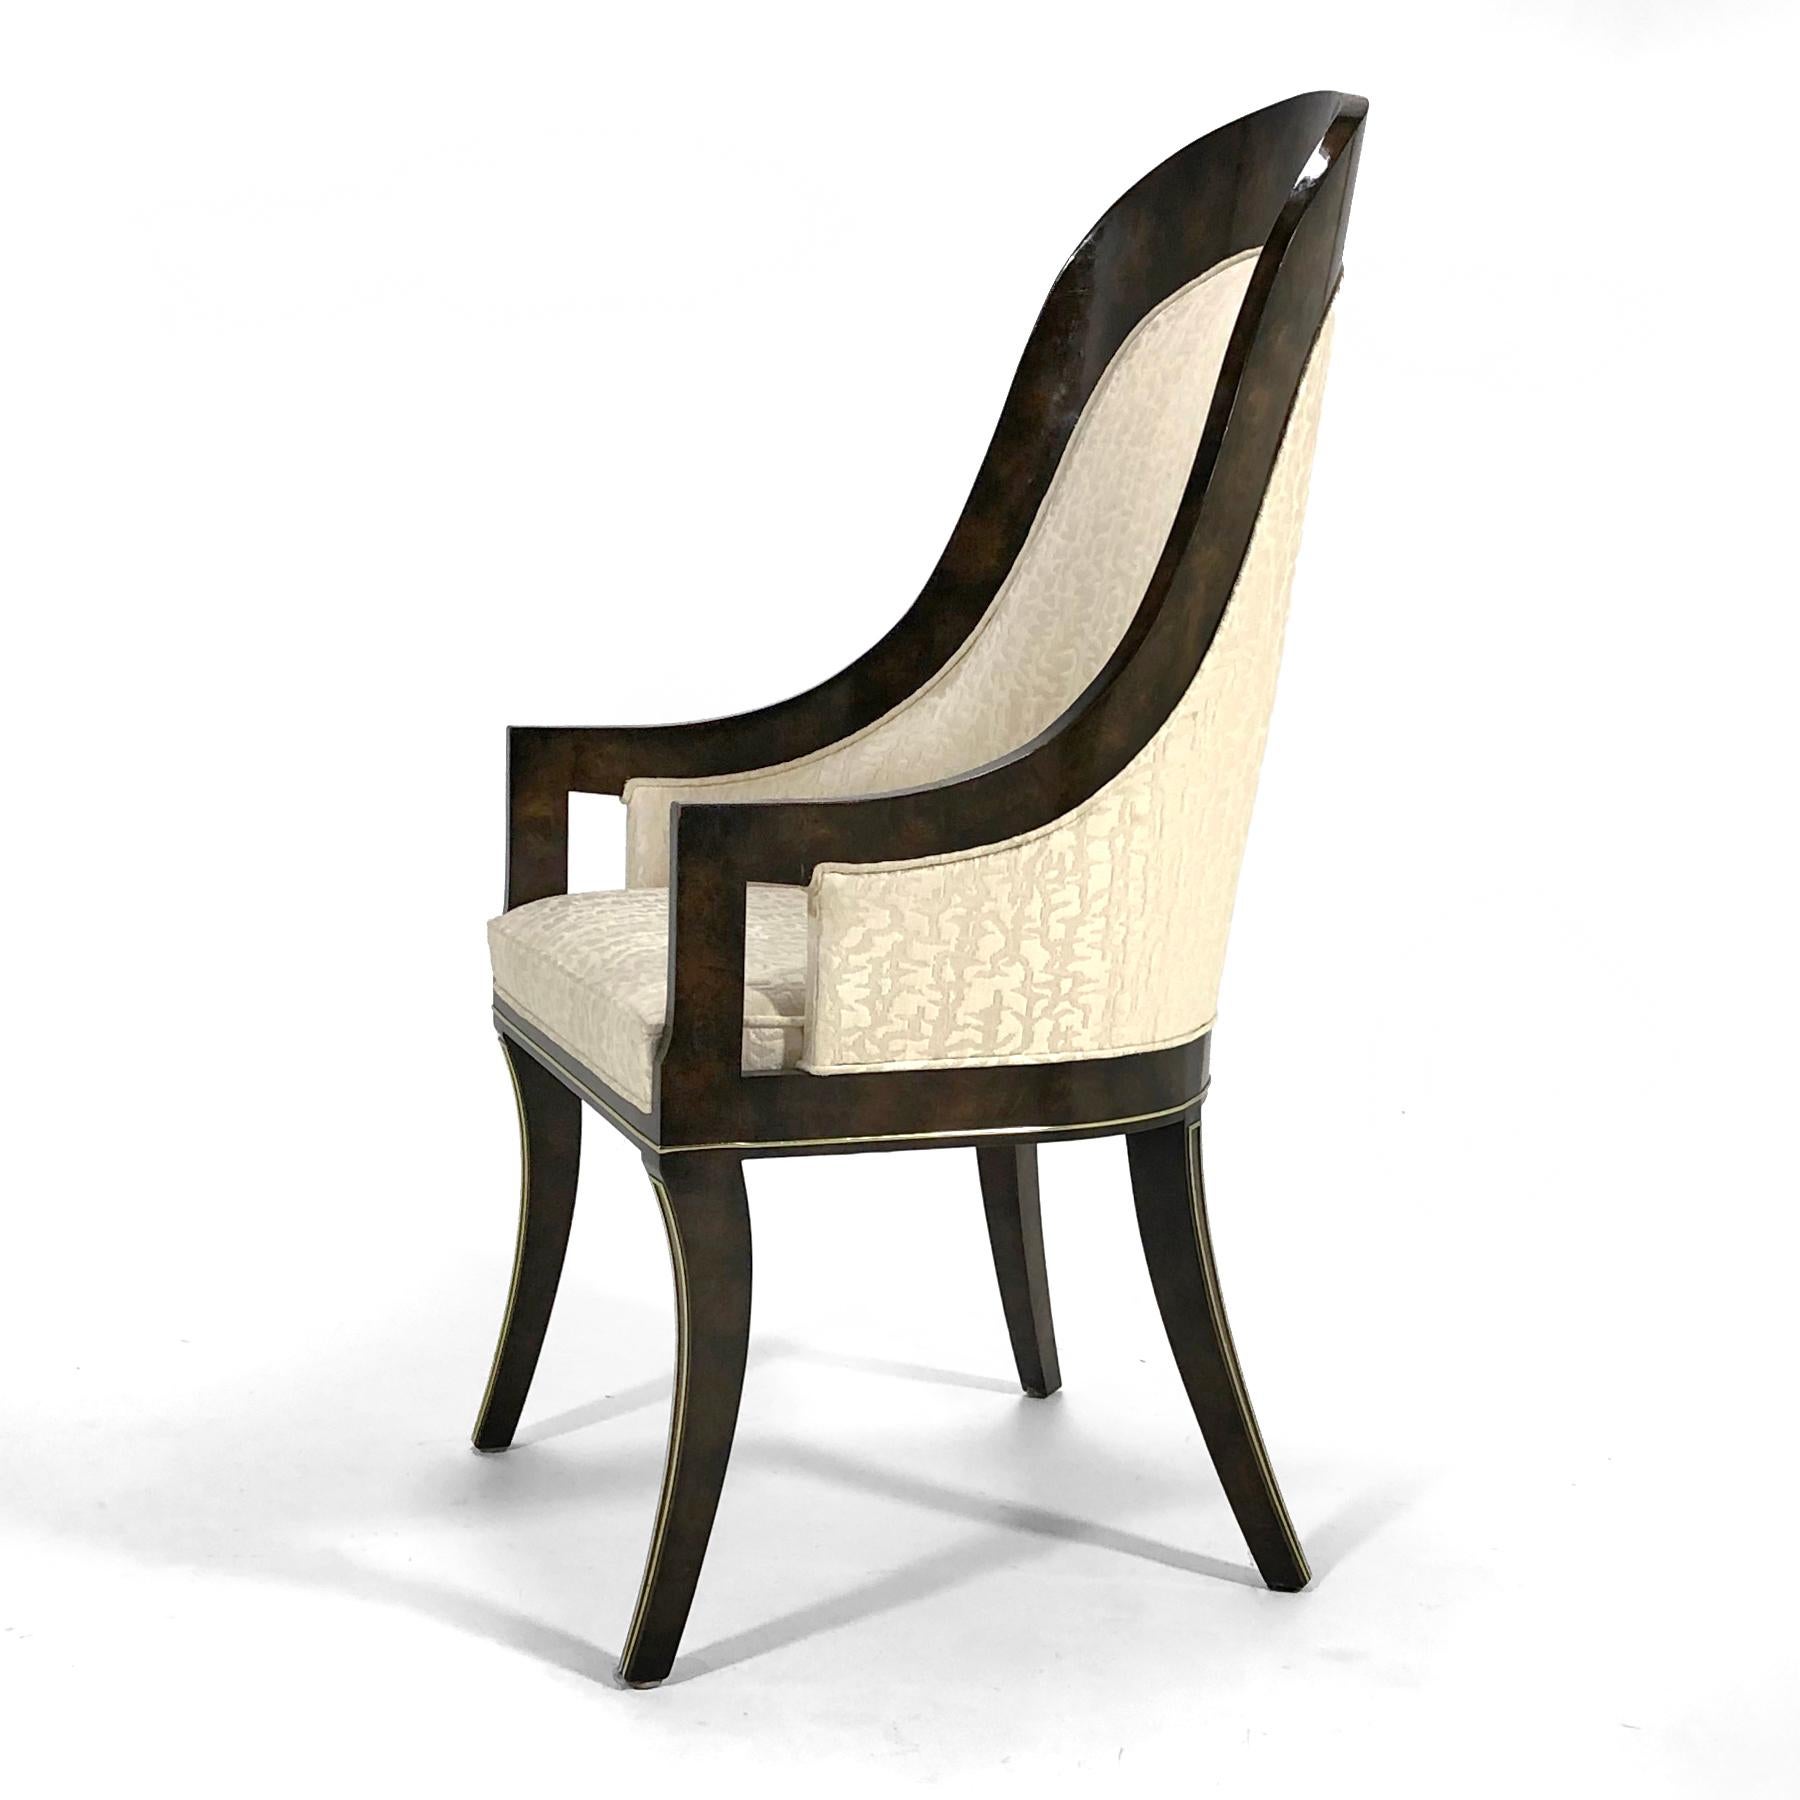 Conçues par William Doezema, ces élégantes chaises de salle à manger de Mastercraft sont dotées d'un cadre en bois d'amboine incrusté de détails en laiton. Il y a 2 fauteuils modèle 832, 4 chaises latérales modèle 831. 

Une table à manger assortie,